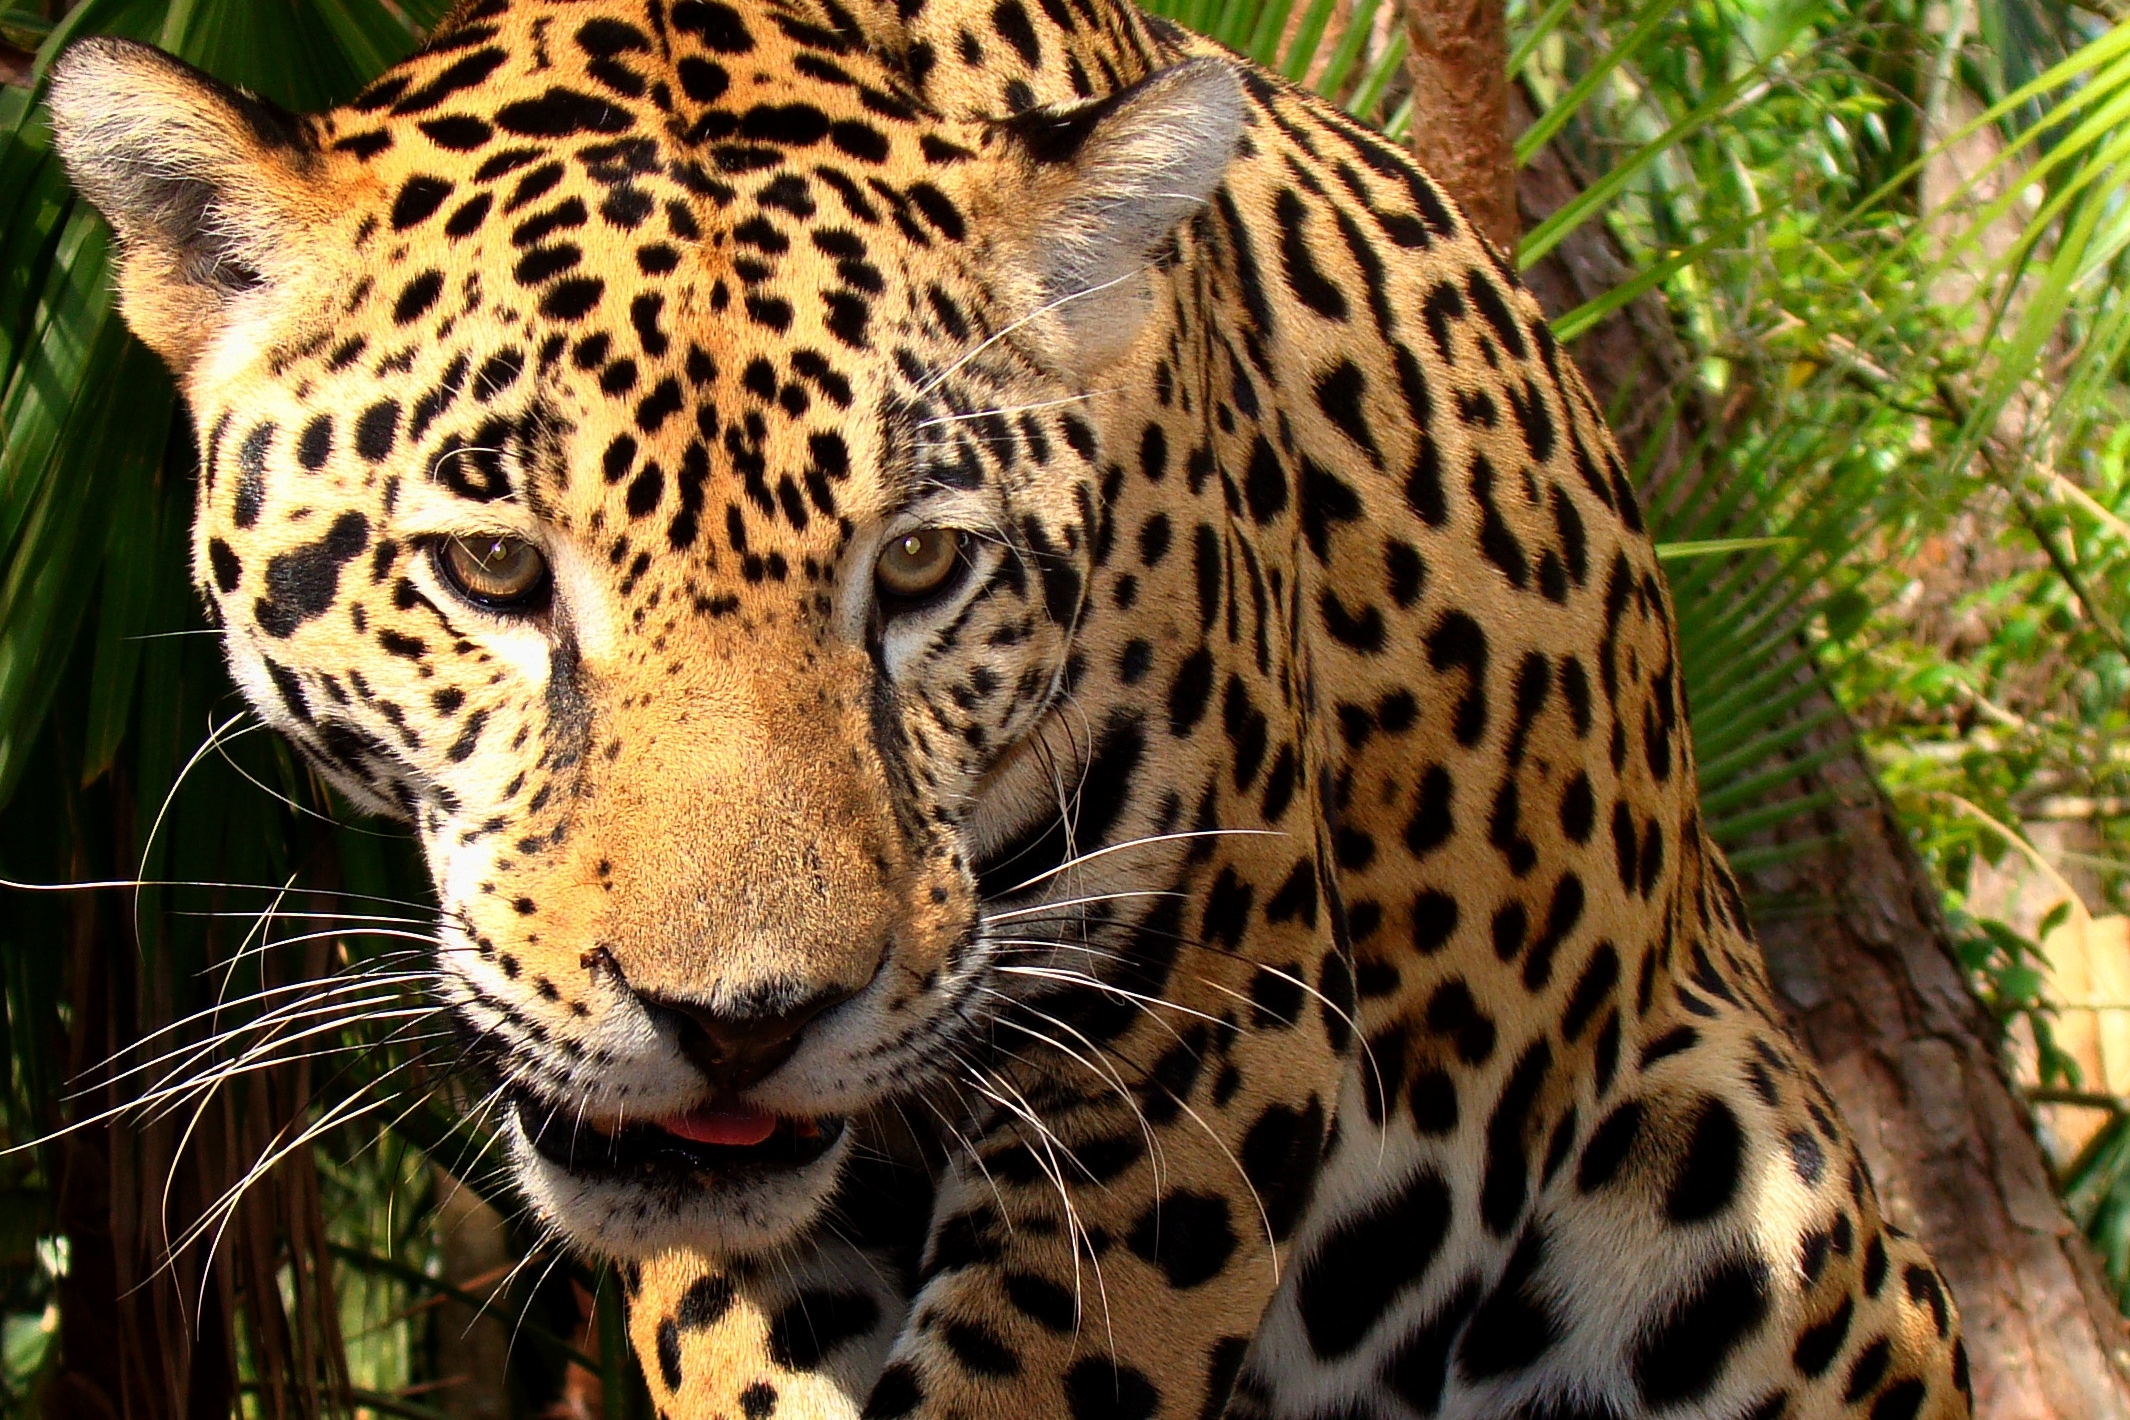 Jaguars net als tijgers op weg naar uitsterven? - Parbode Sneak Peek